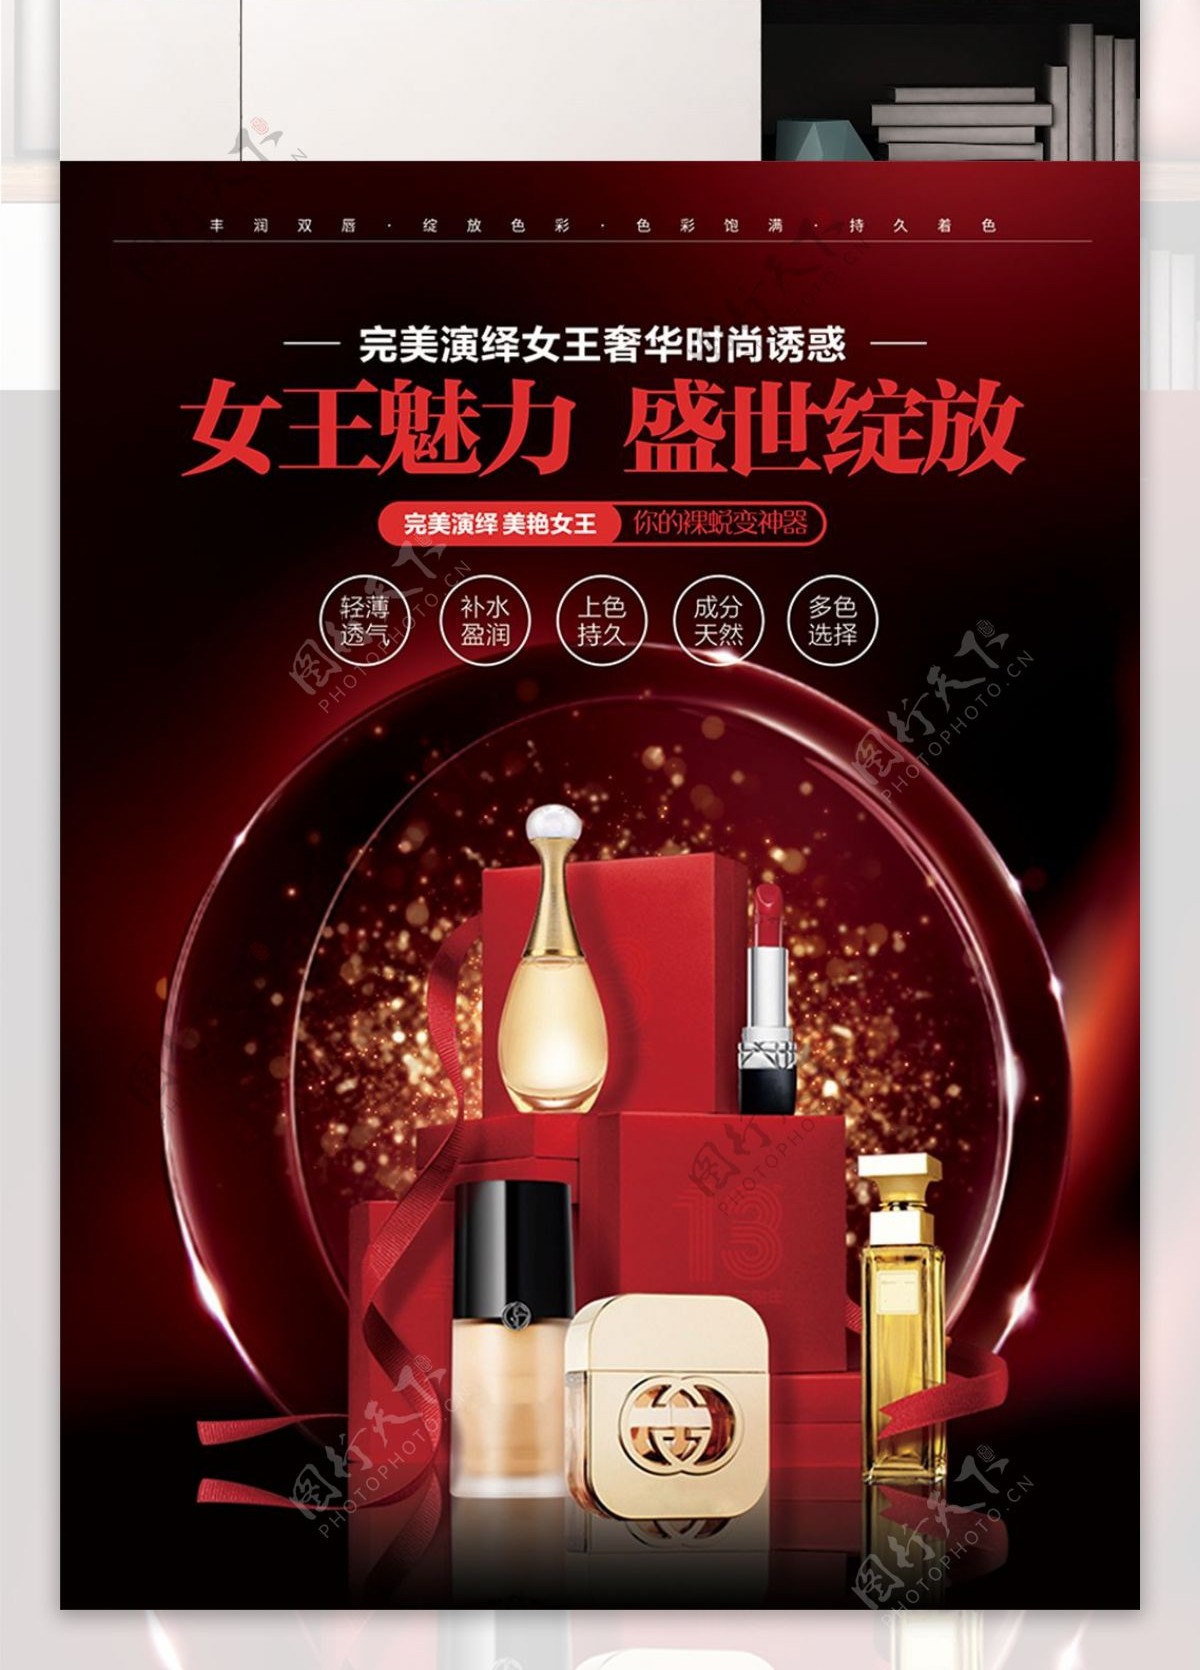 女王魅力化妆品中国红宣传海报展板